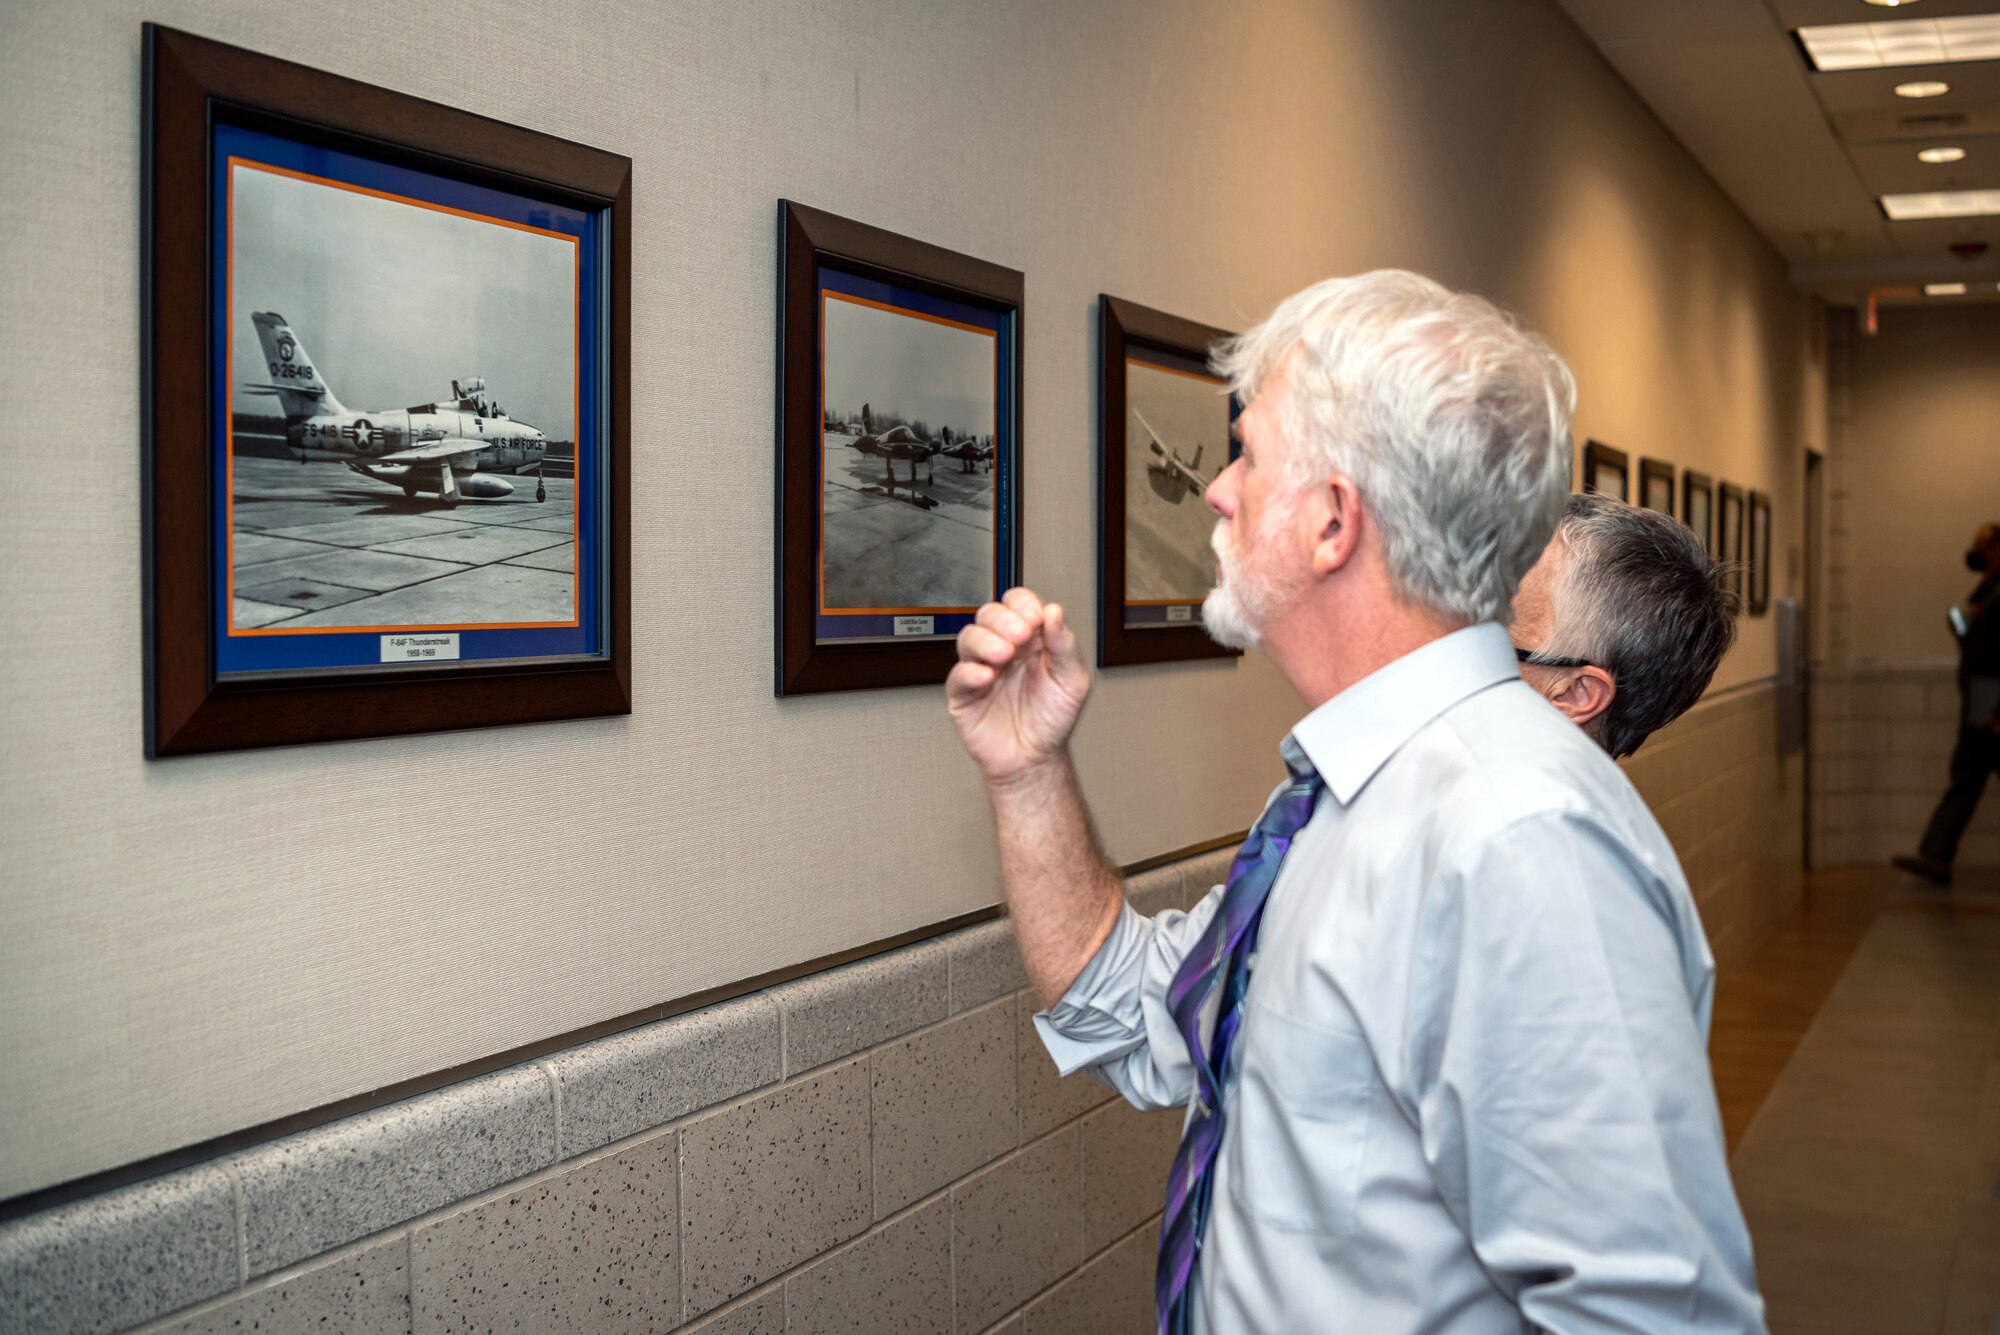 Man and woman looking at aircraft photo.